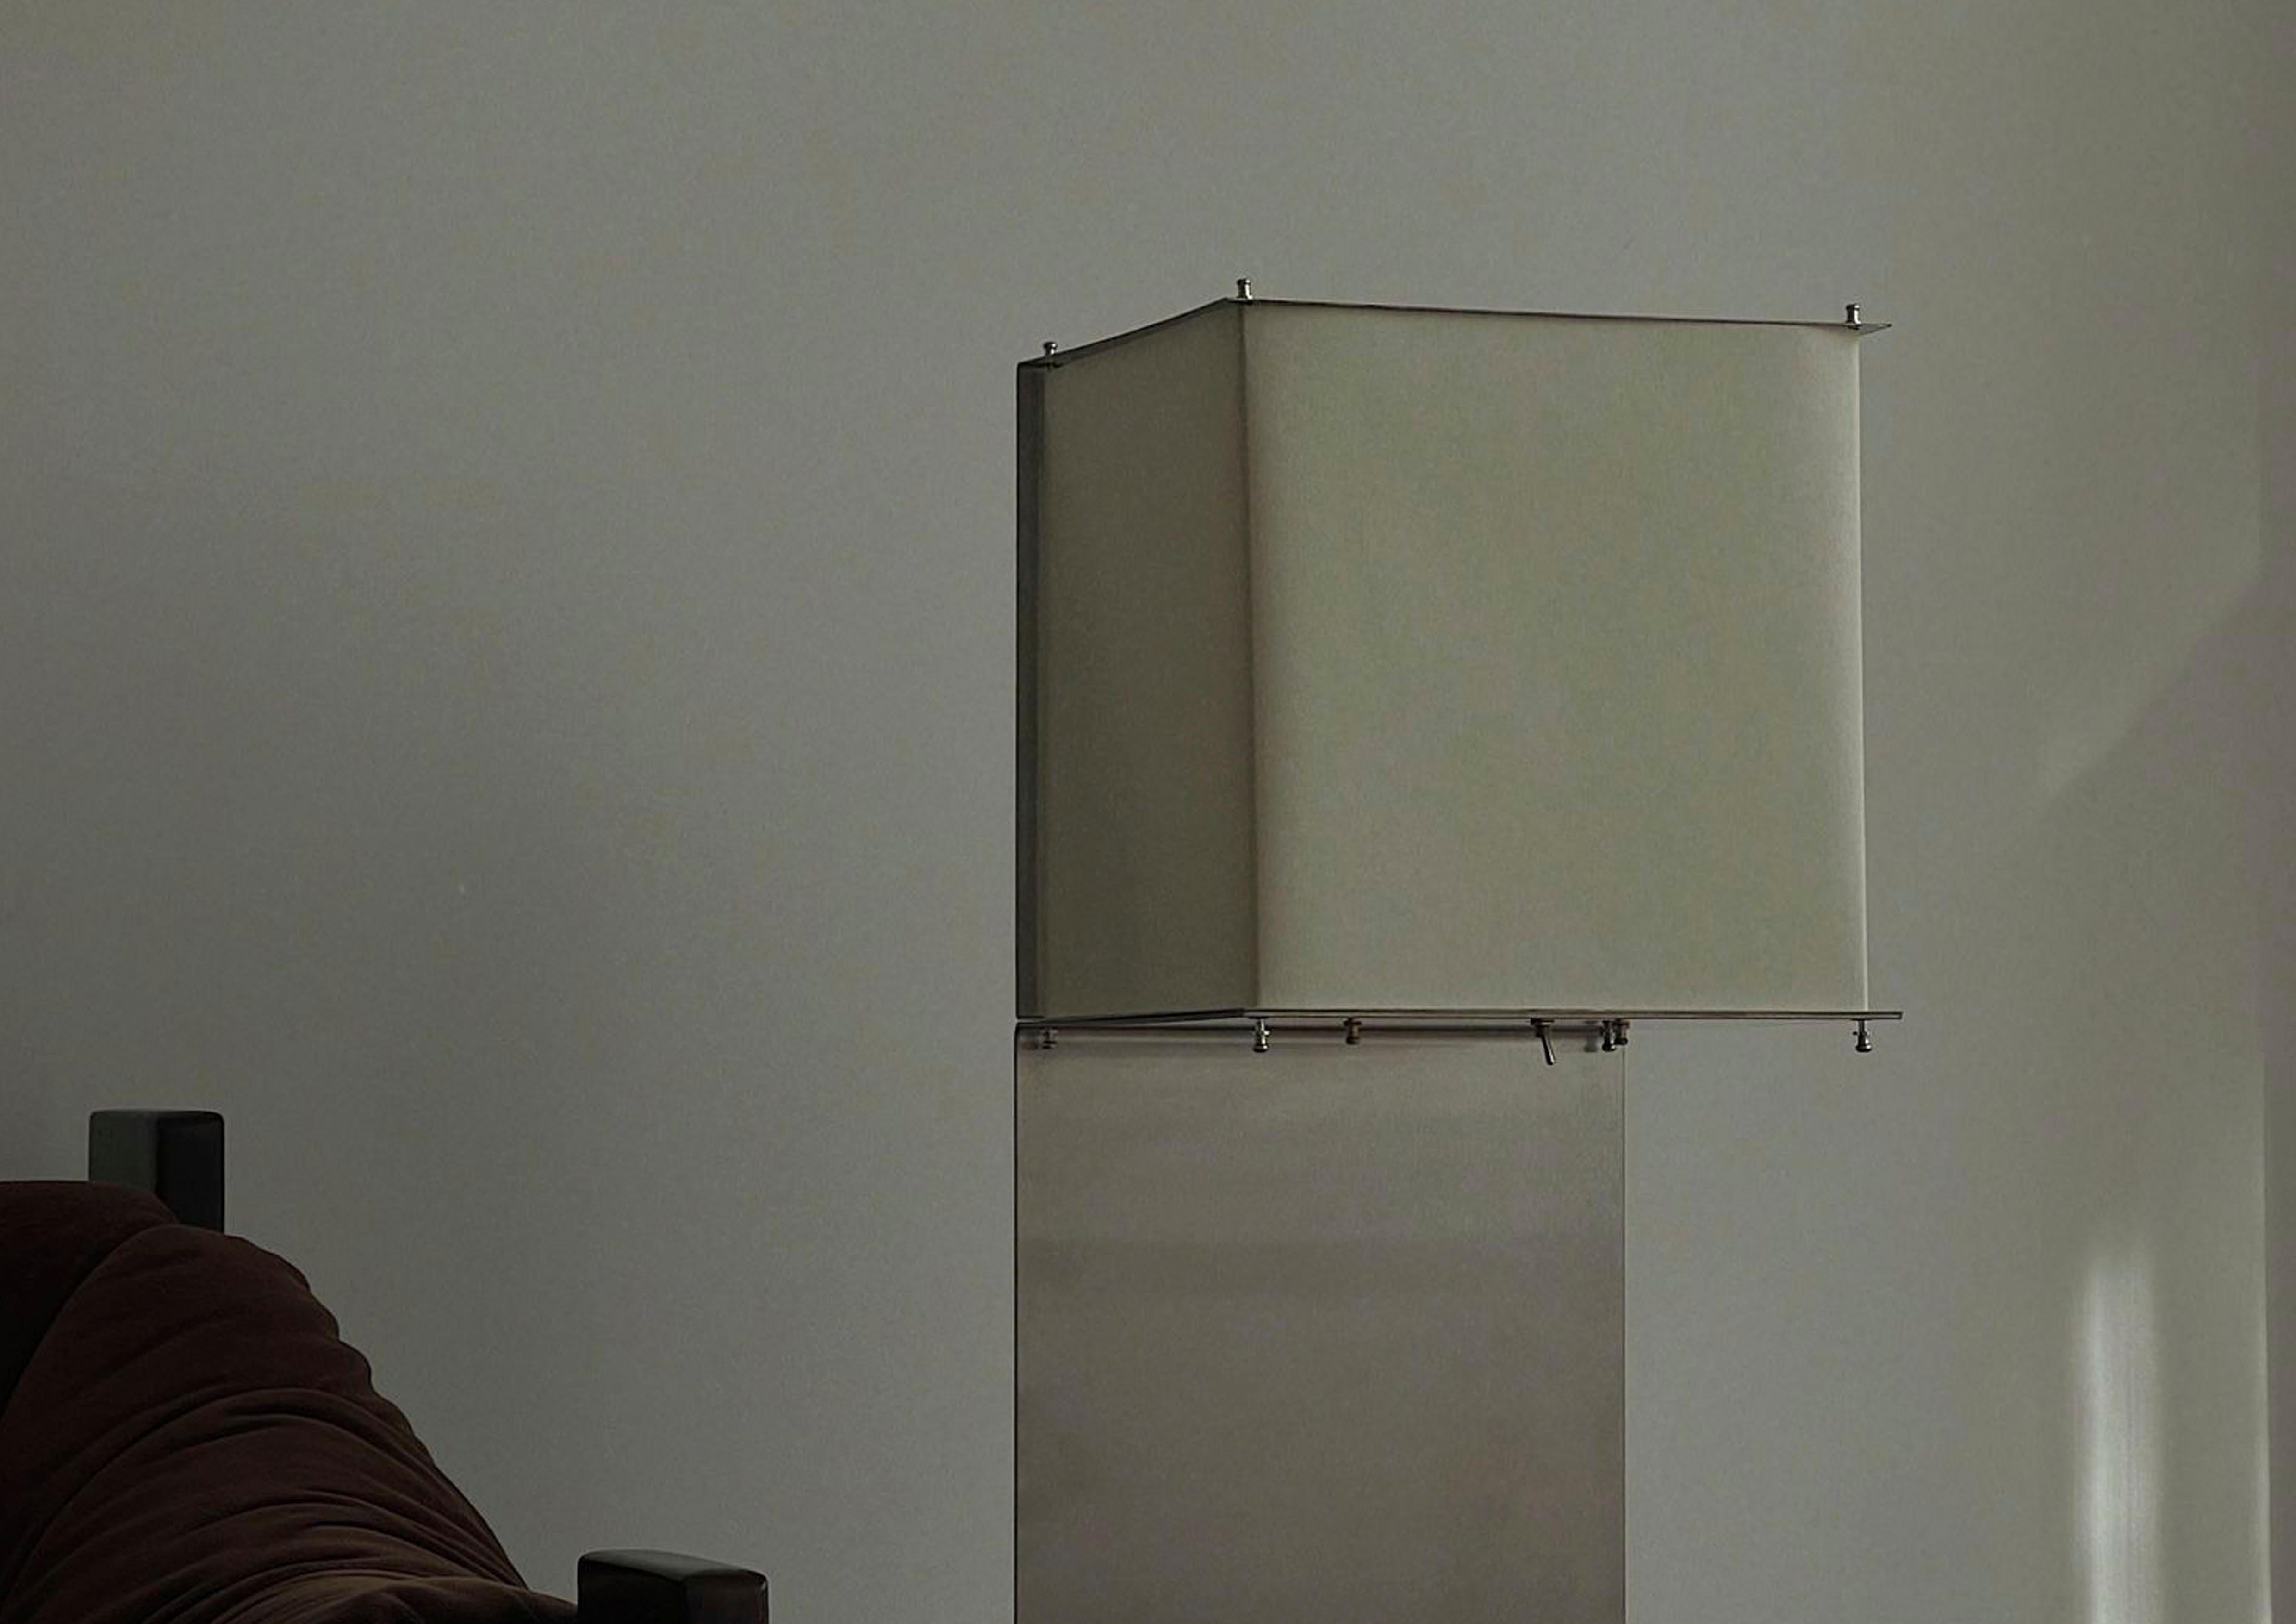 Avec des lignes géométriques précises, la lampe Arca, dernière création de Pedro Ávila (@avilapedro), établit un contraste intriguant entre l'ascendance du papier parchemin et le tranchant de l'acier inoxydable. Dans cette fusion contrastée, une